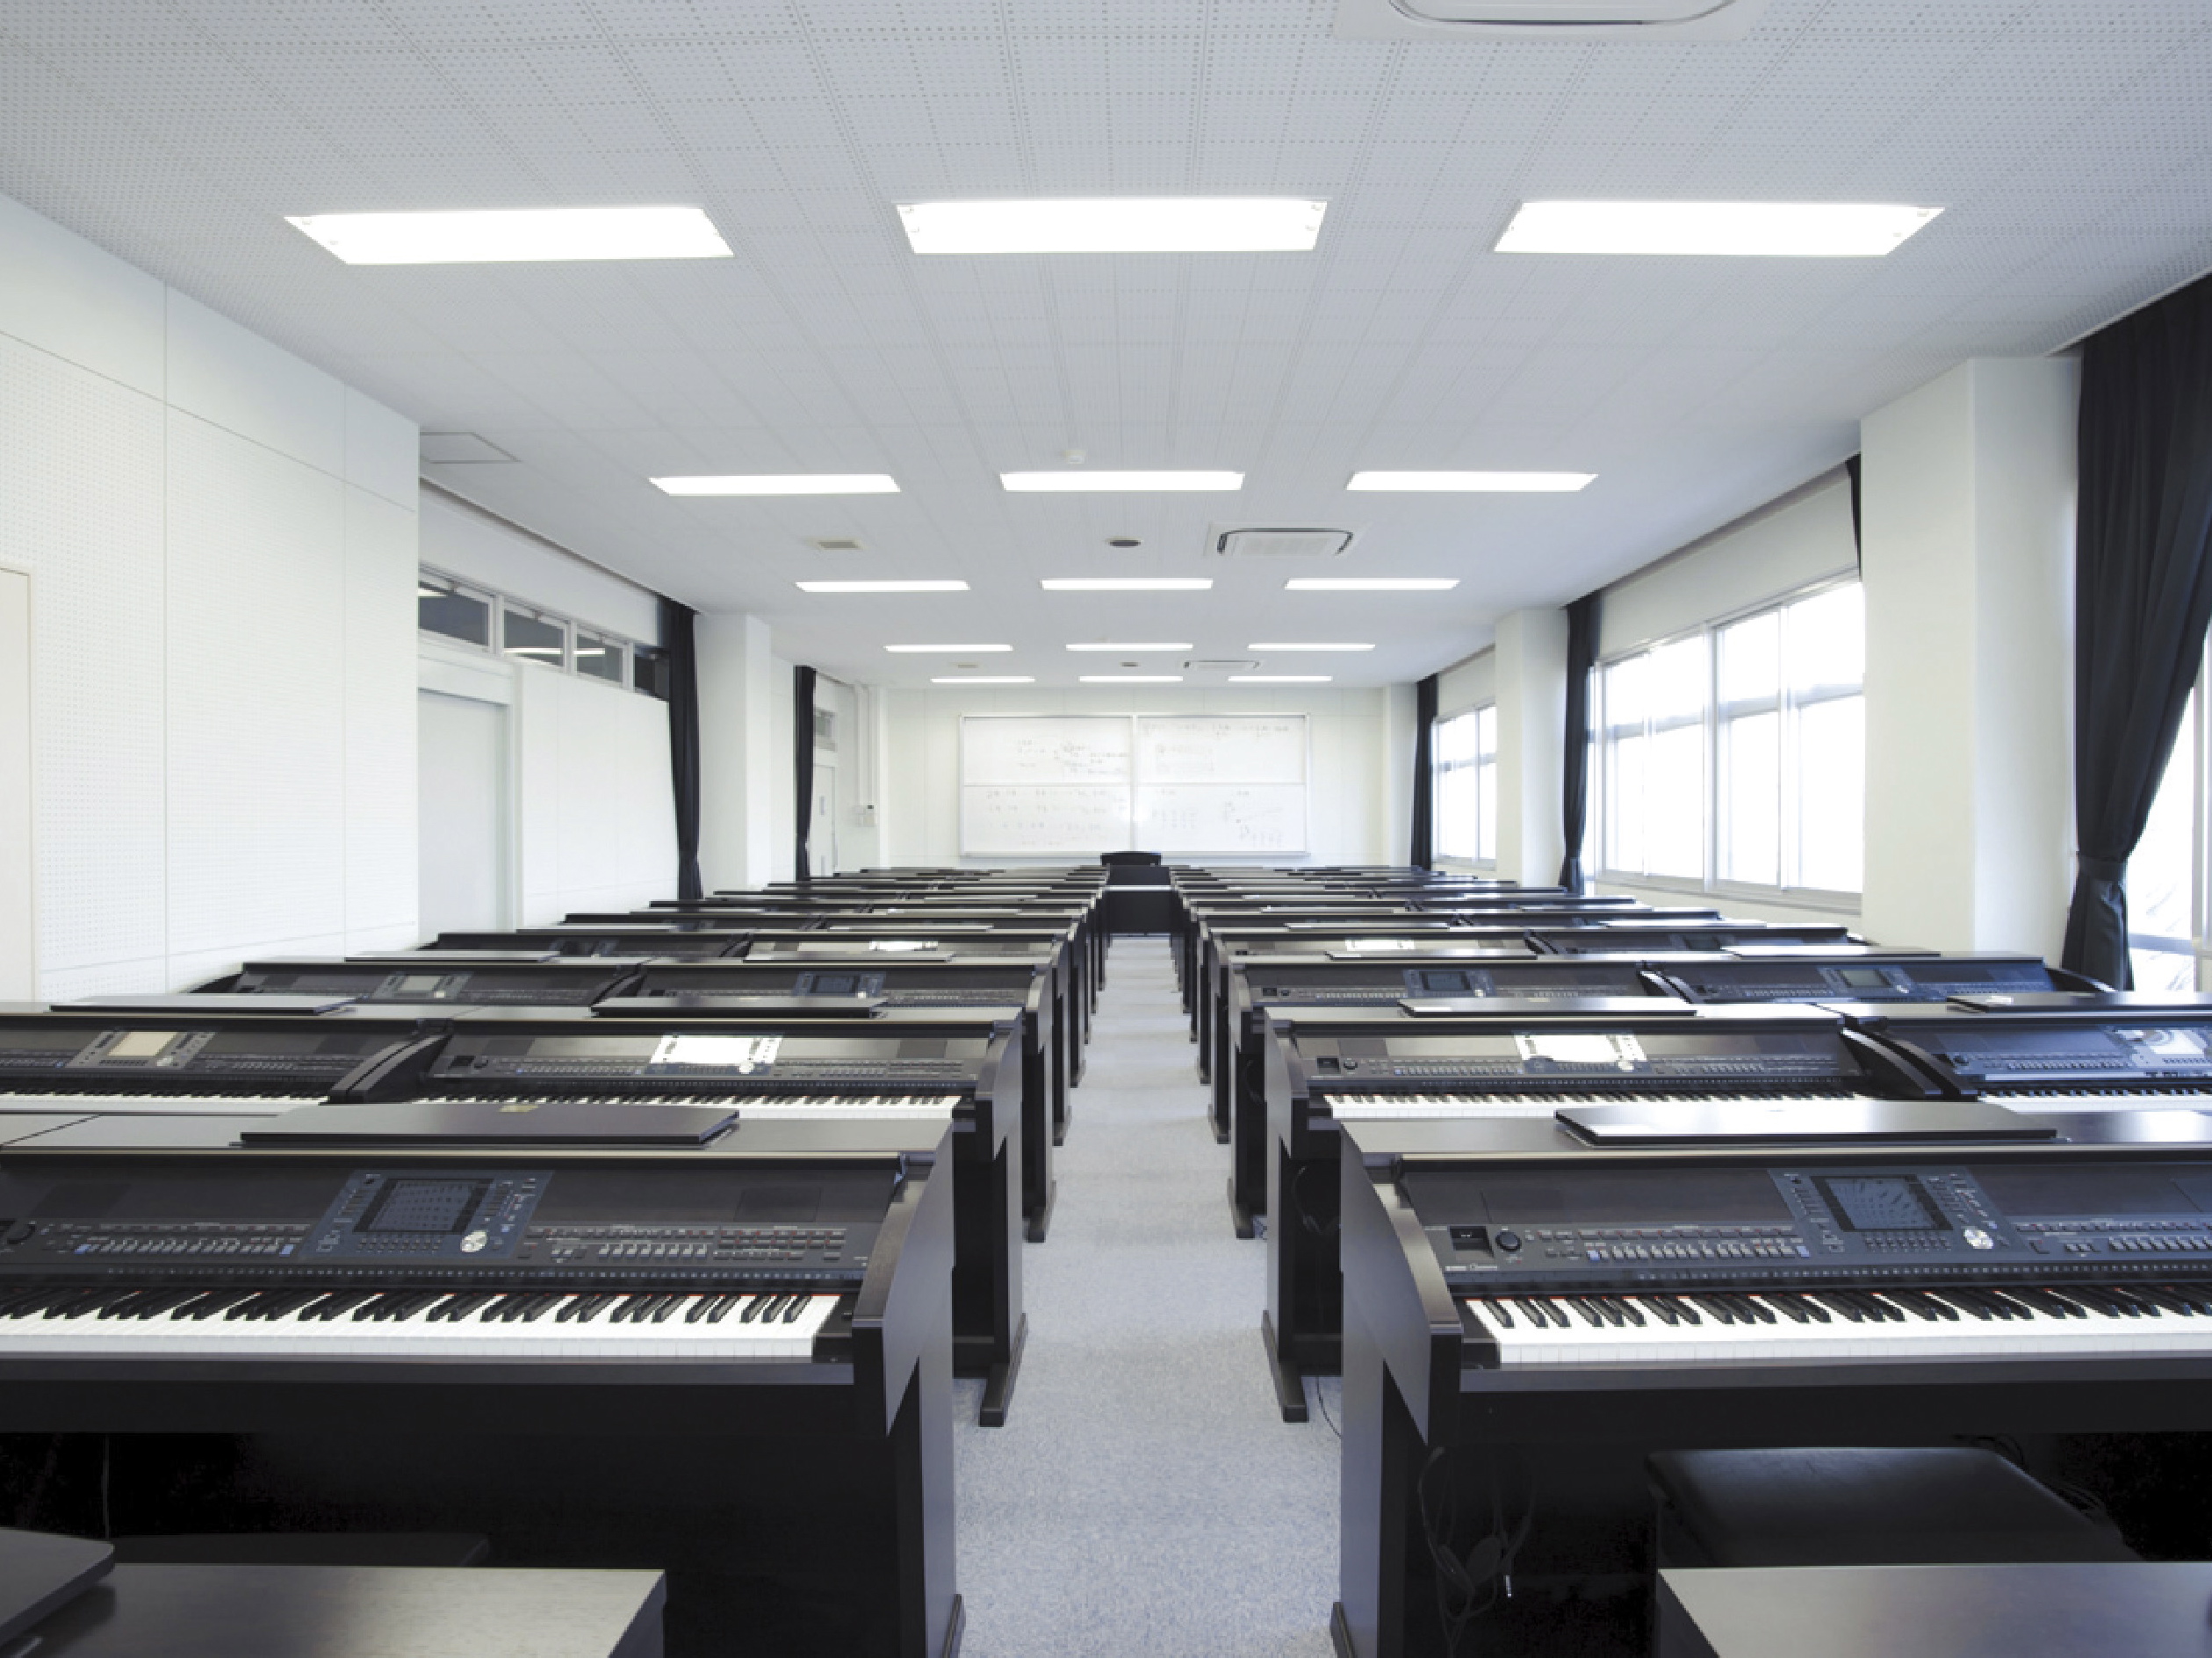 【都城キャンパス(1号館)】音楽室。電子ピアノ50台・アップライトピアノ10台を配置。授業だけでなく自主練習にも開放しています。